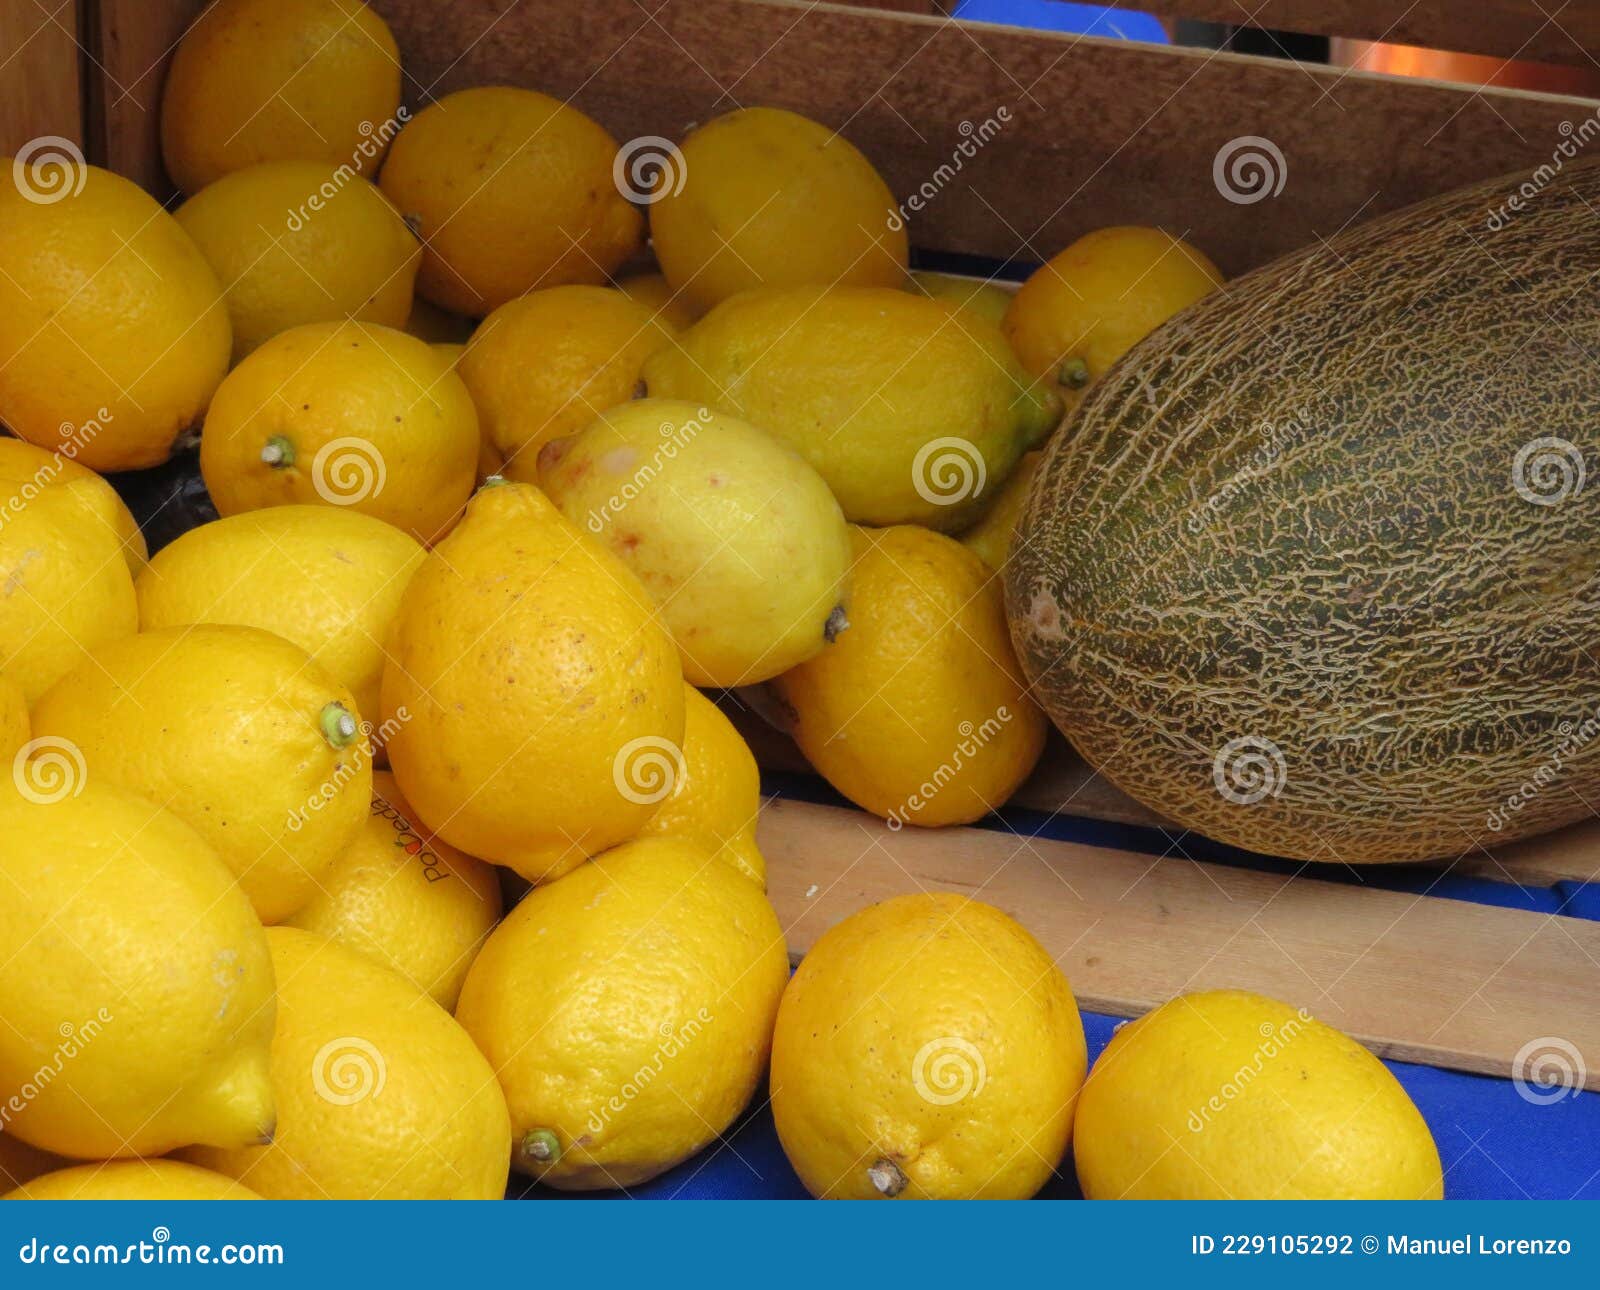 delicious natural fruit lemons melons flavors colors aromas